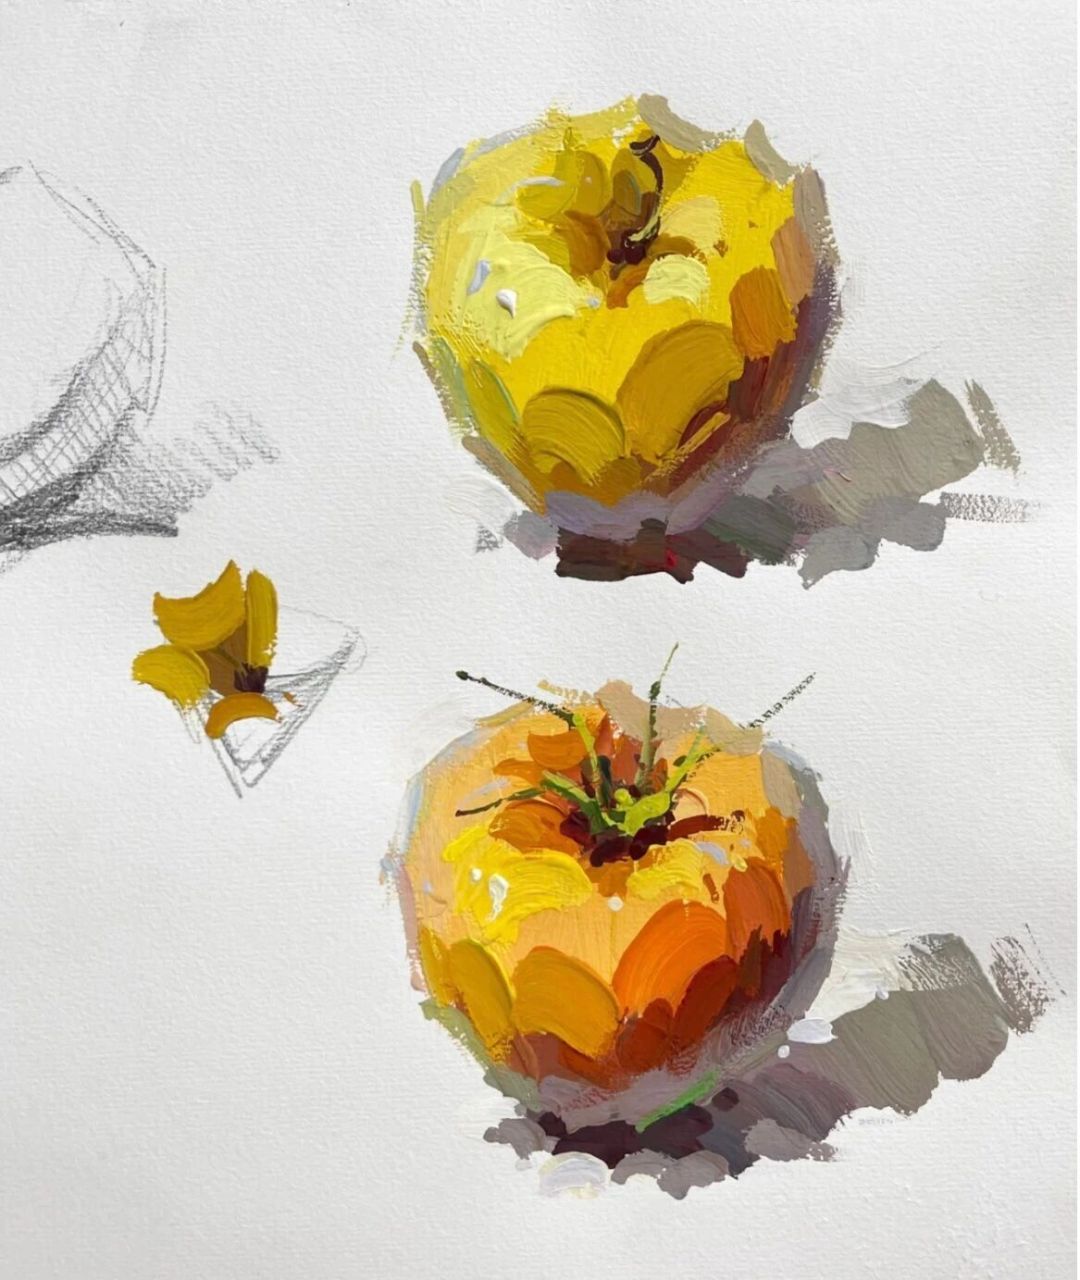 色彩苹果的画法步骤图图片